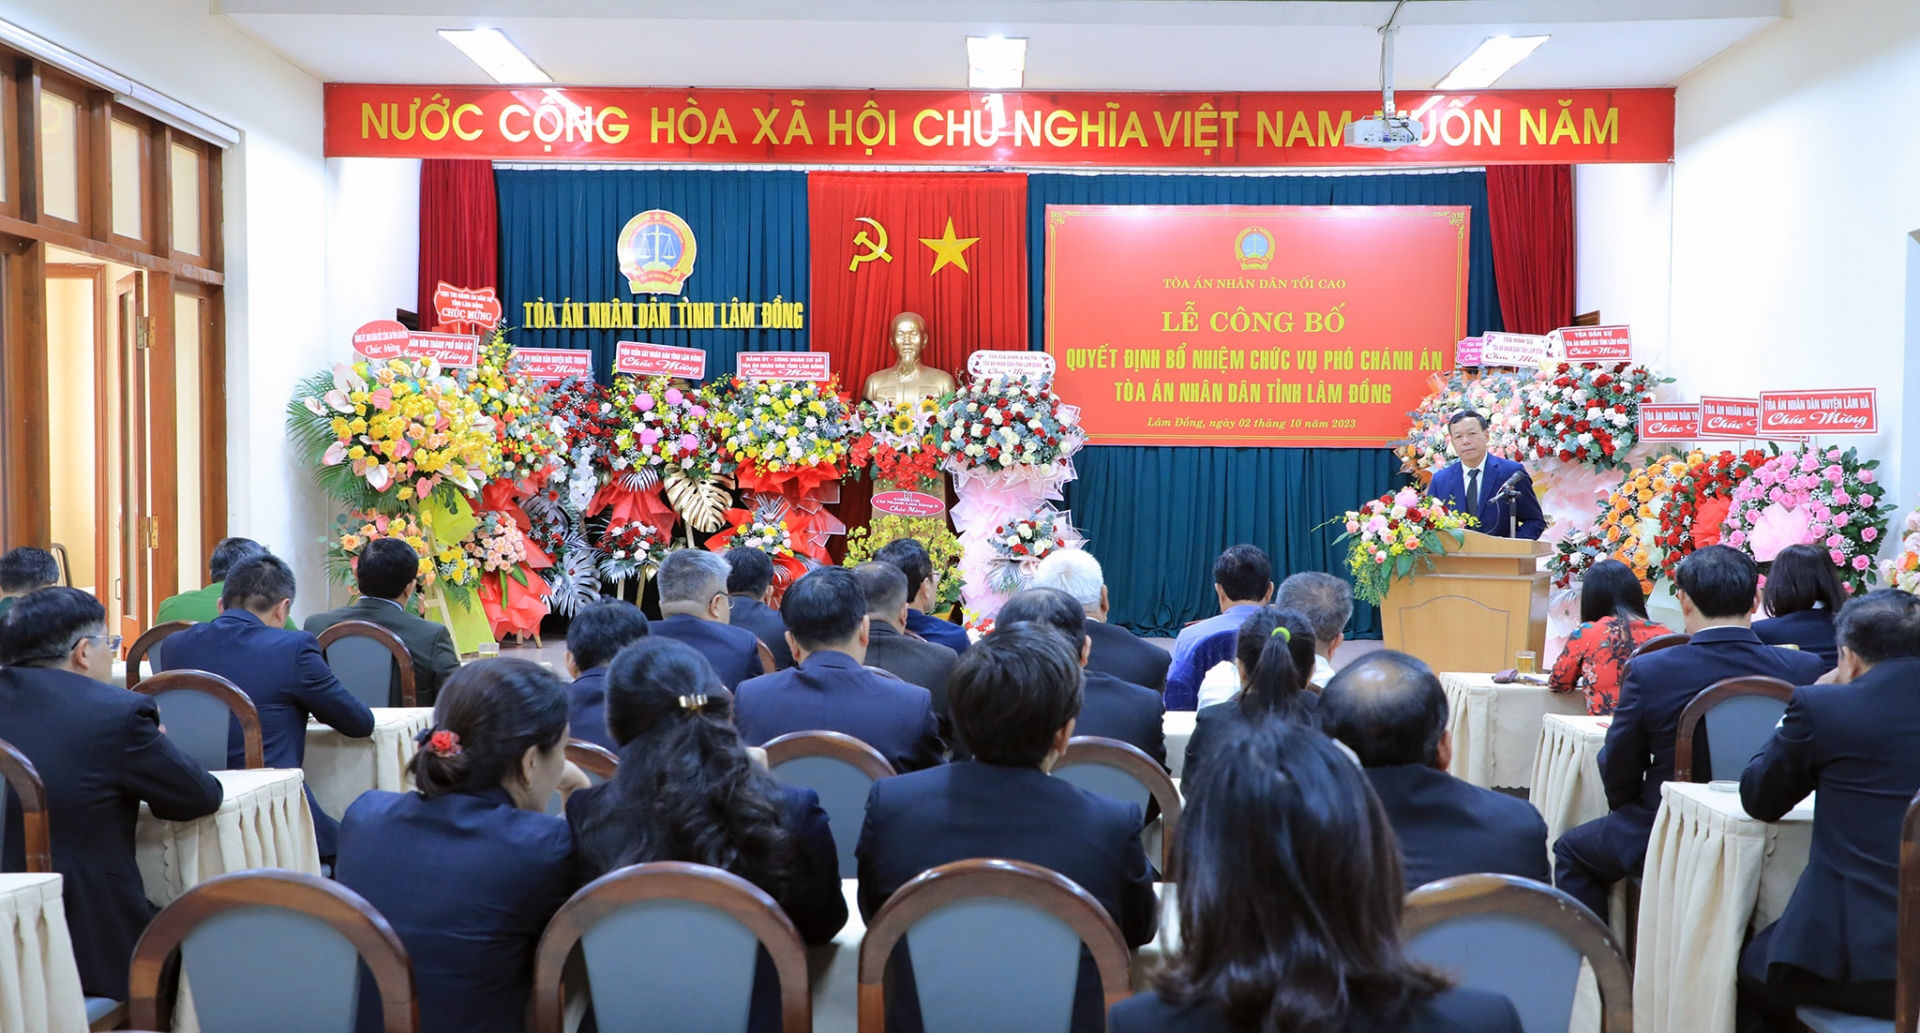 Quang cảnh buổi lễ Công bố và trao quyết định bổ nhiệm Phó Chánh án TAND tỉnh Lâm Đồng